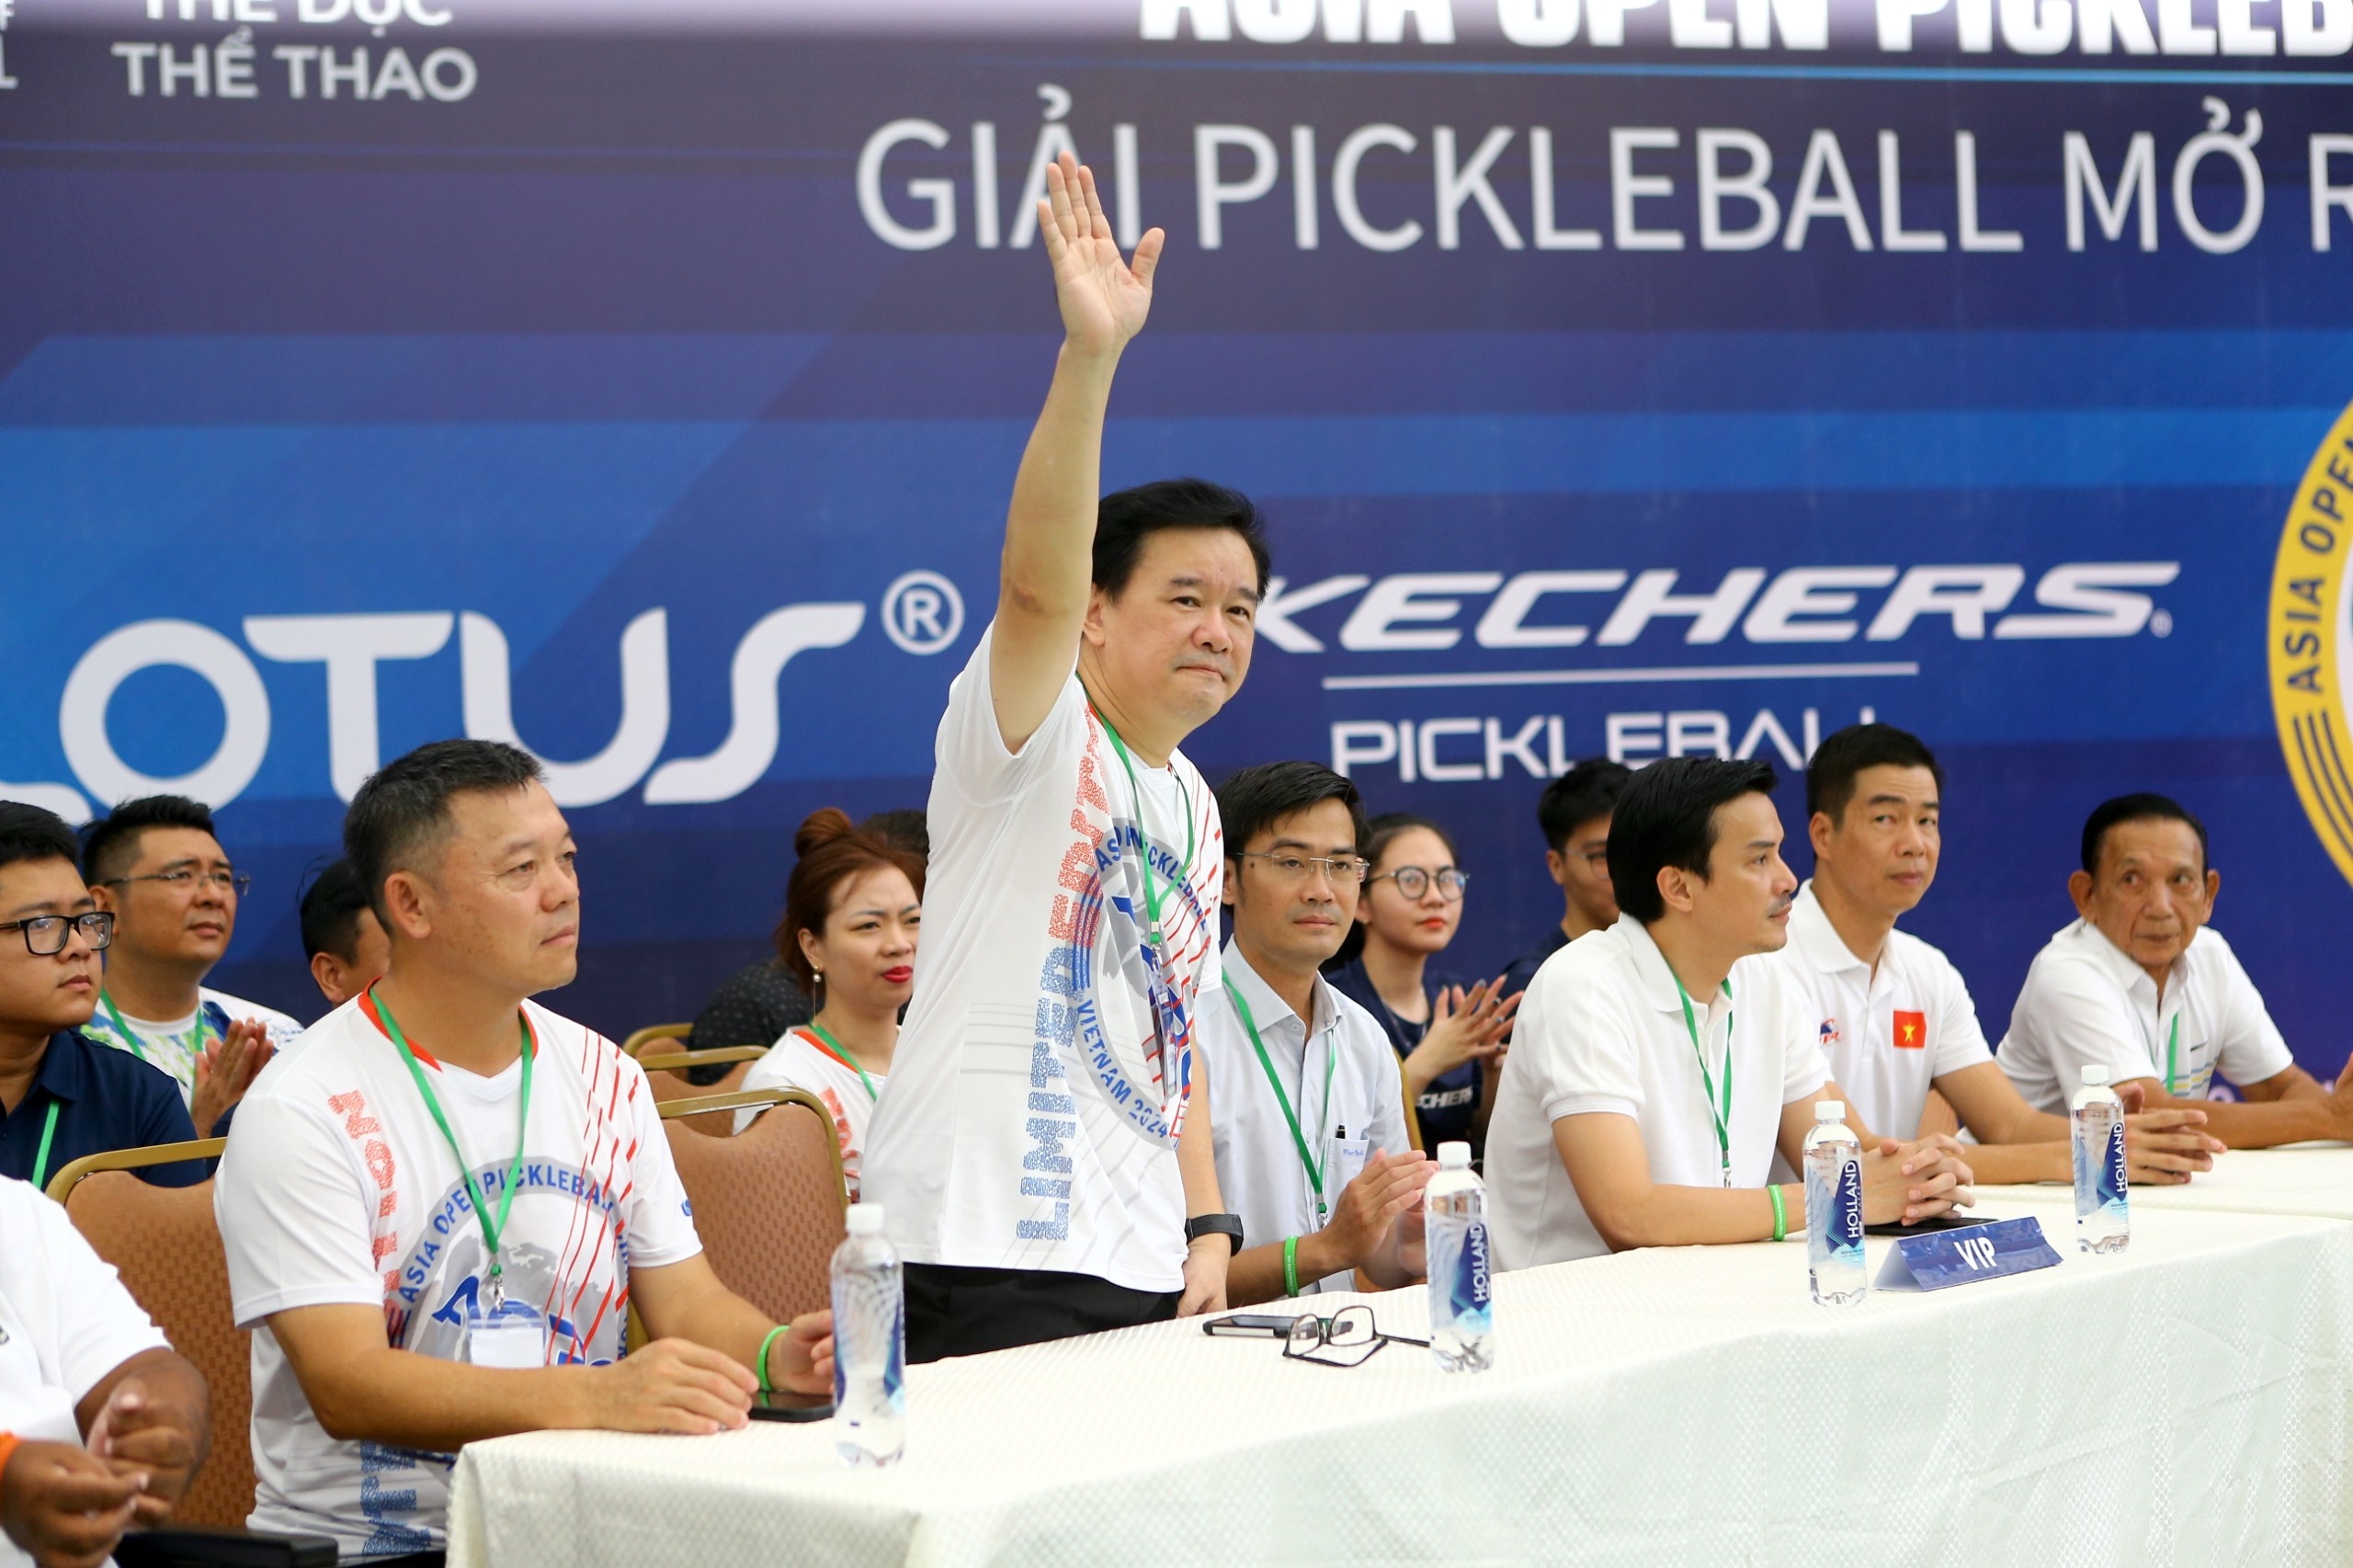 Ông Hogan Lai, Chủ tịch Liên đoàn Pickelball châu Á tại buổi lễ khai mạc